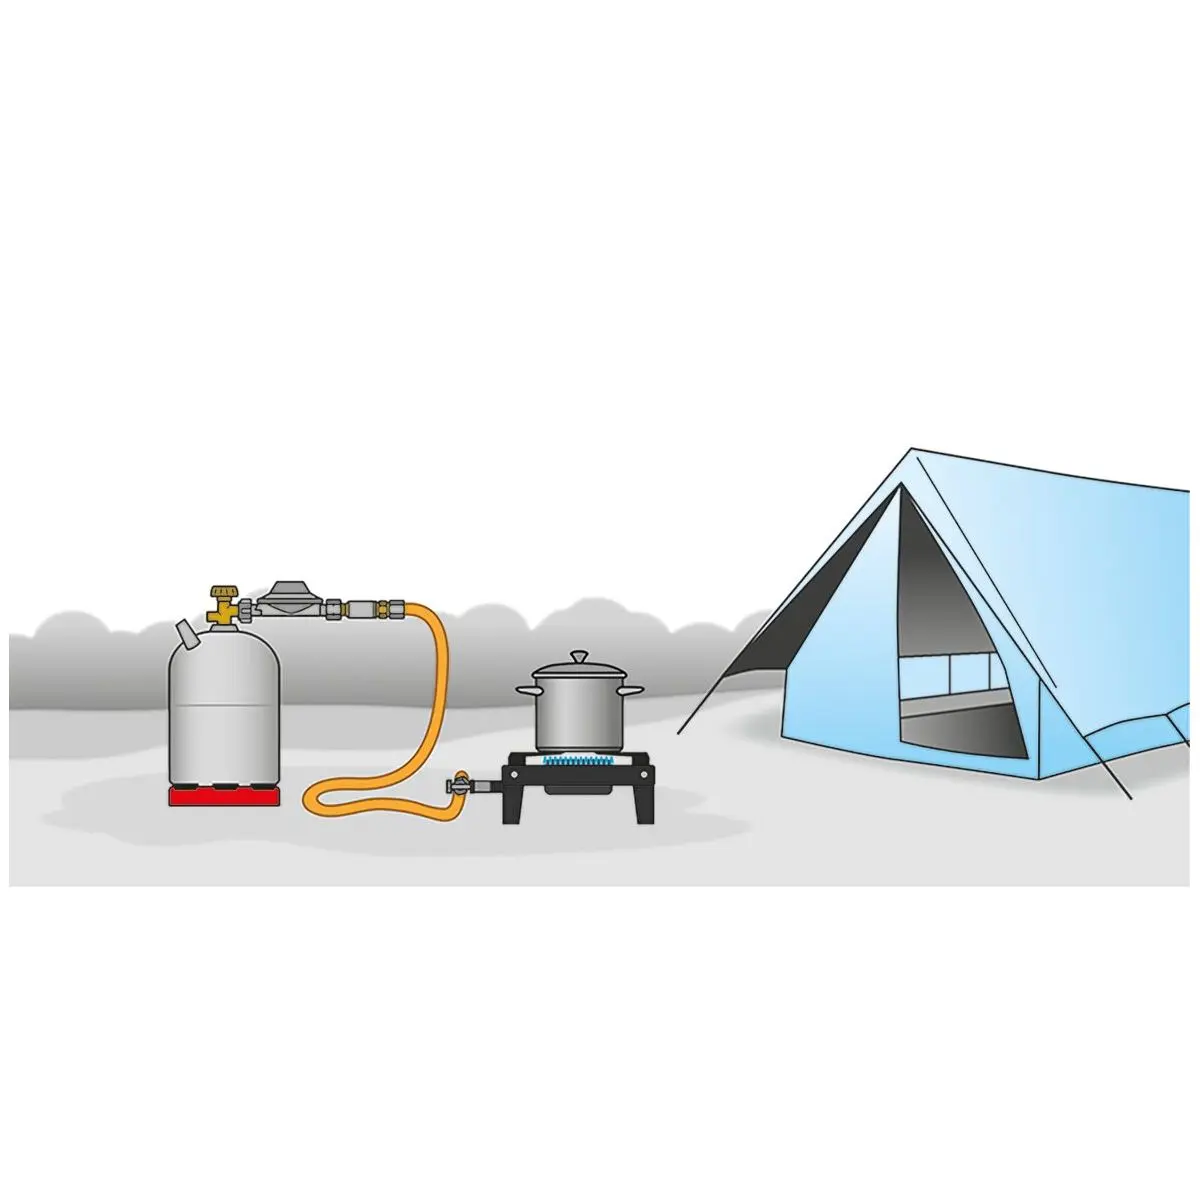 Supapă de gaz anti-răsturnare - pentru încălzitoare de terasă